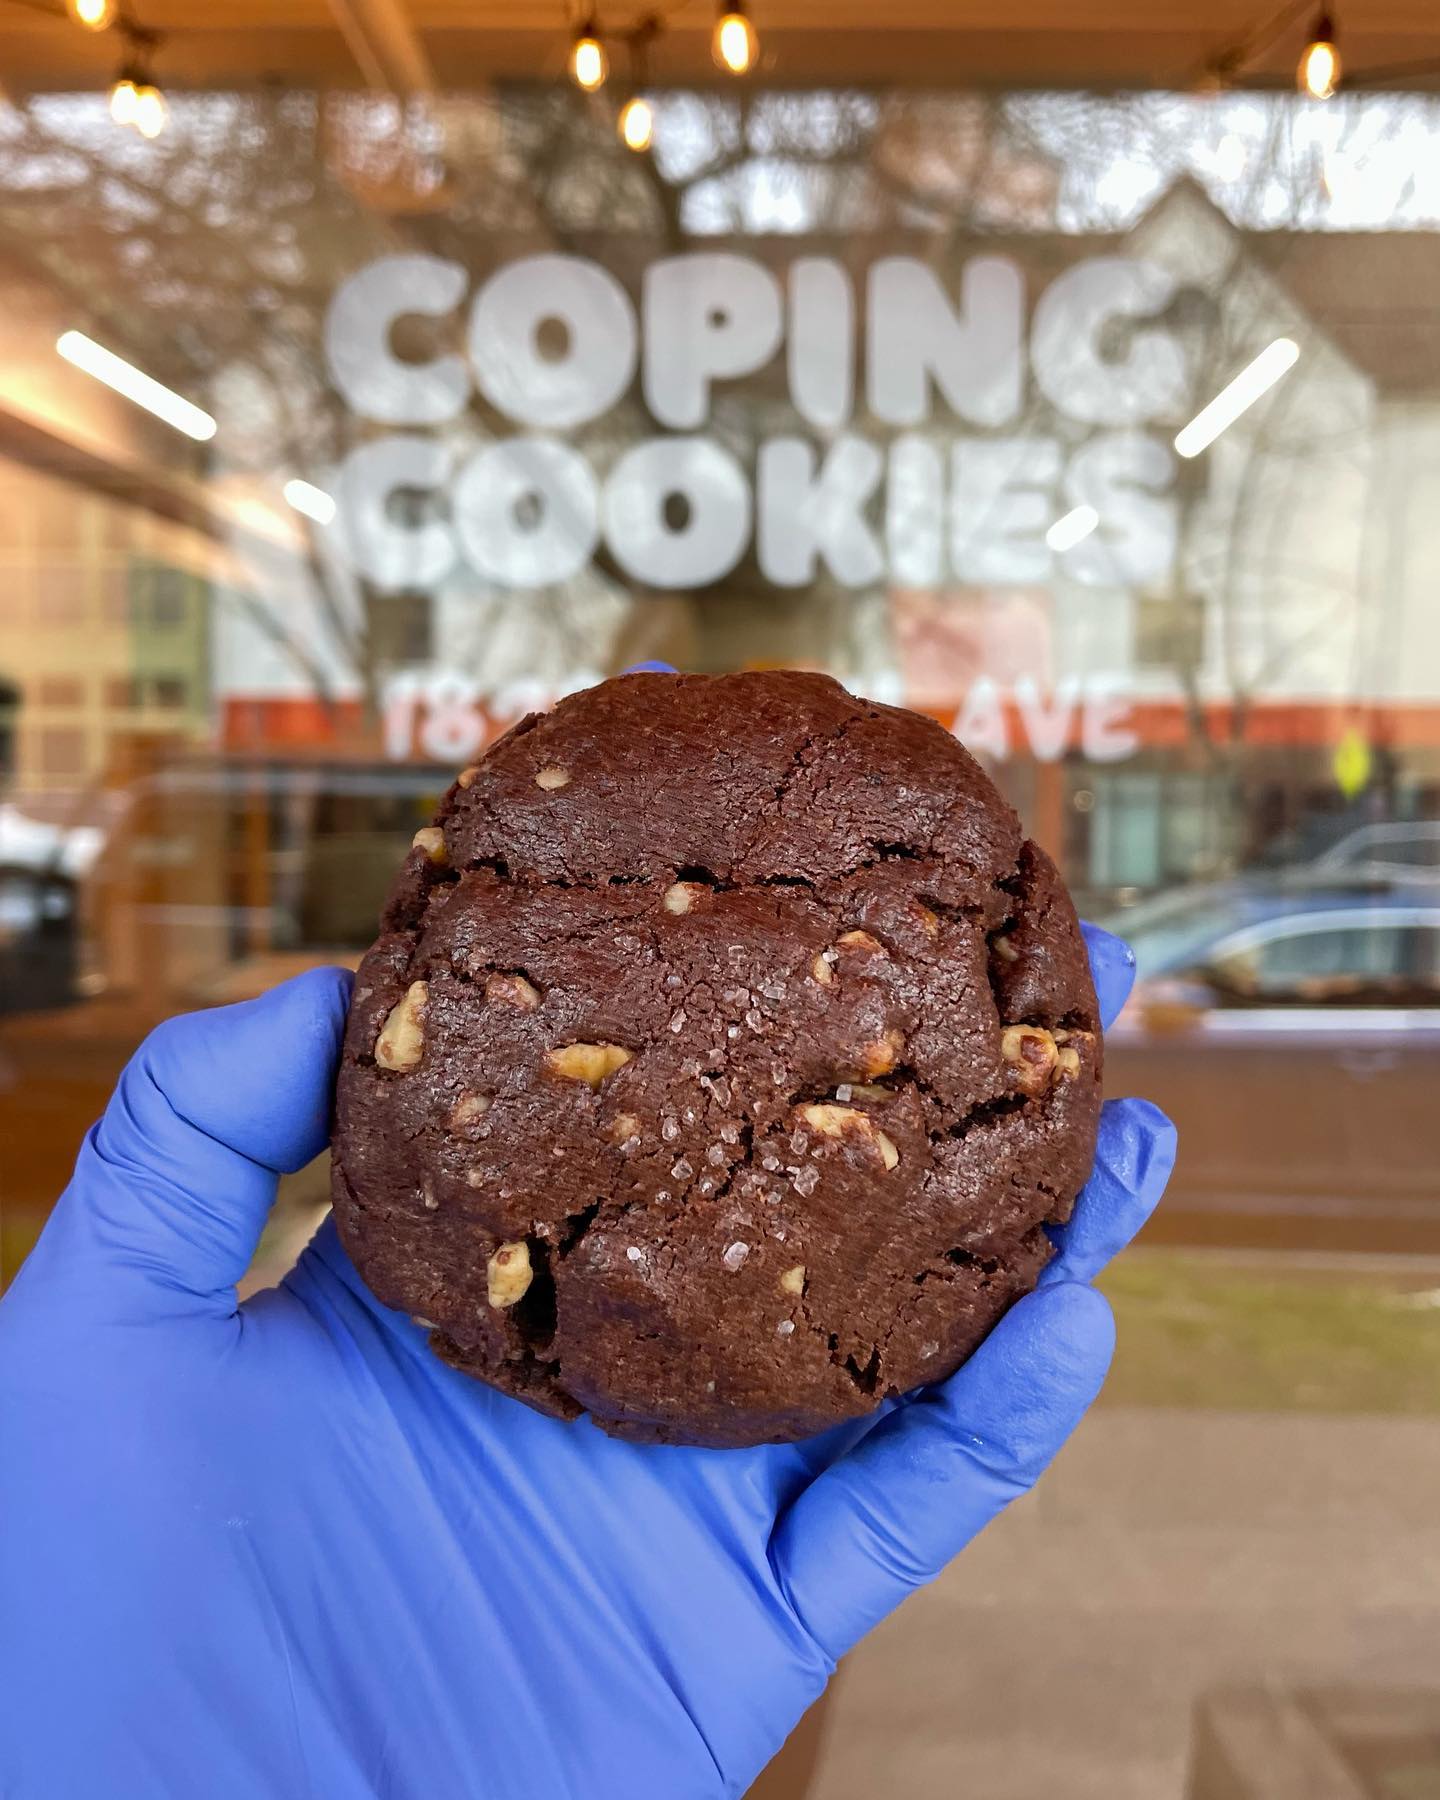 Coping Cookies